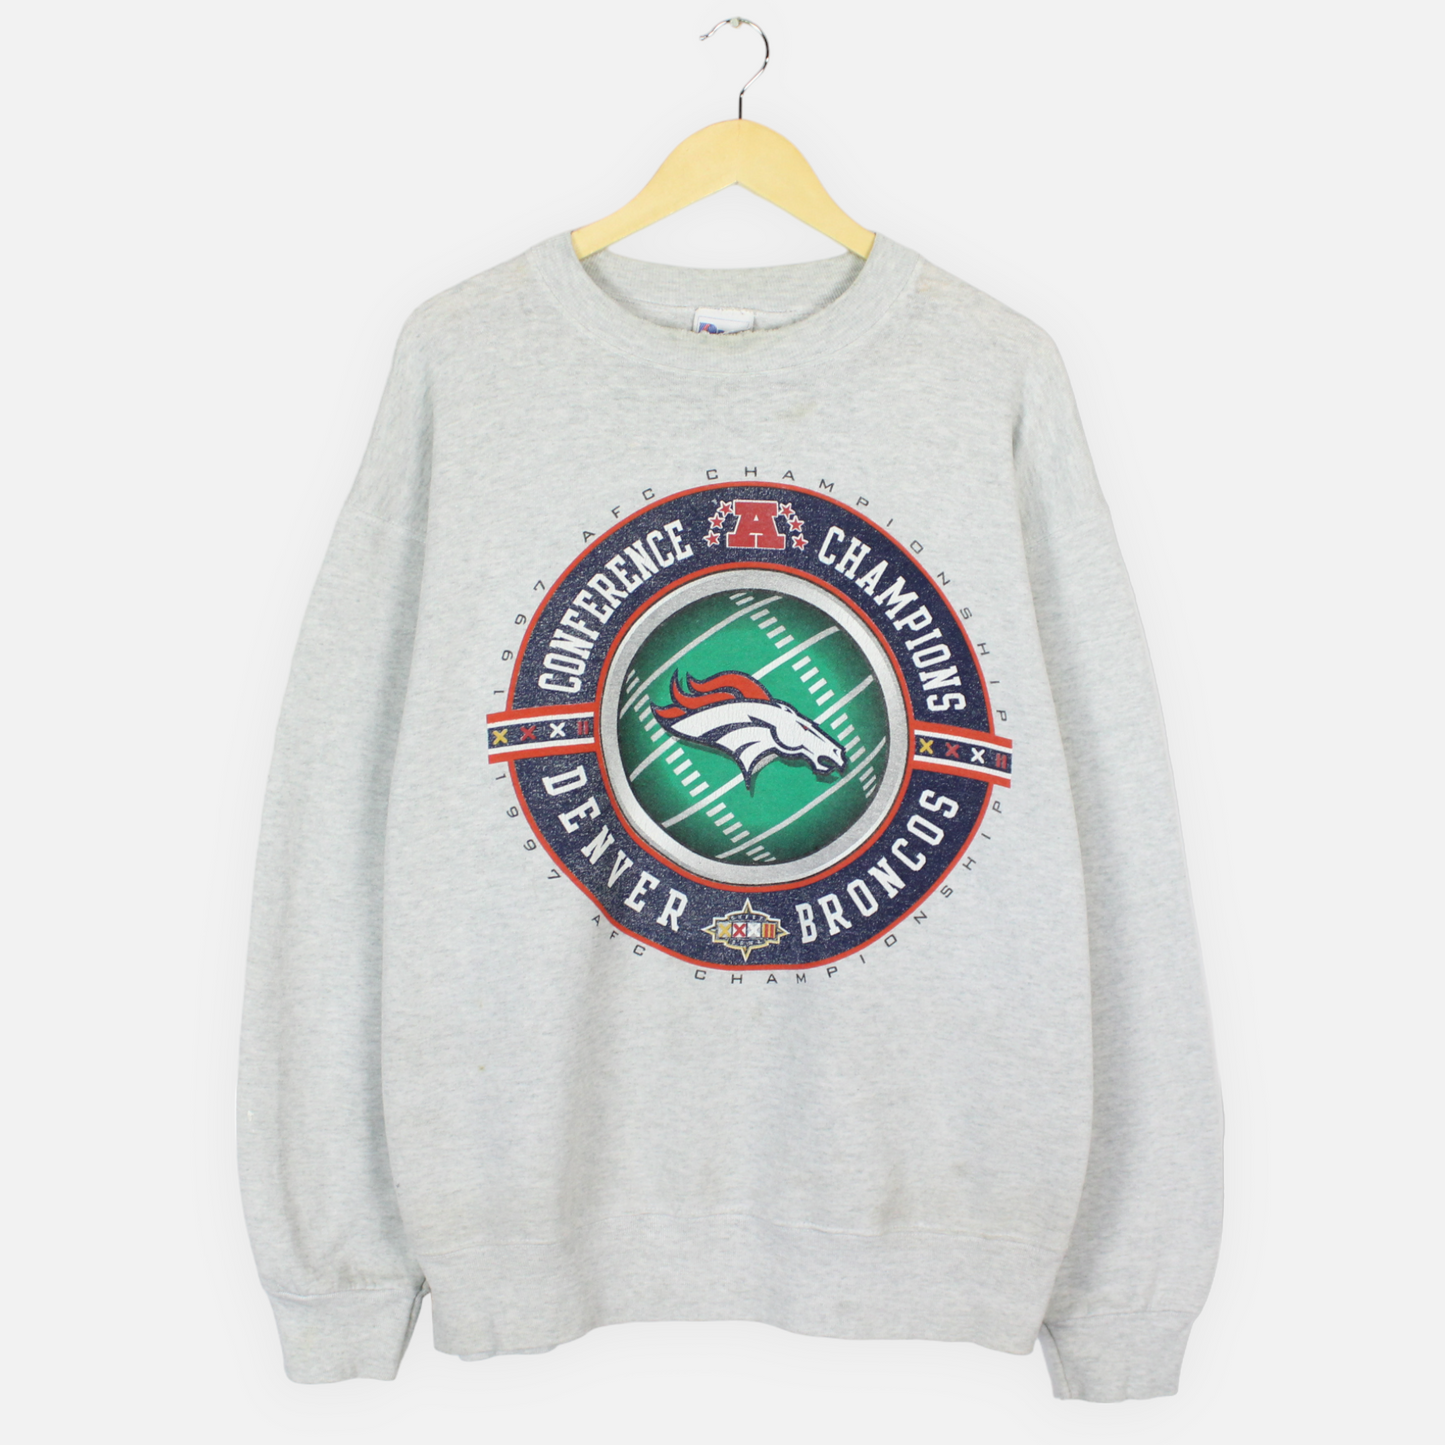 Vintage 1998 Denver Broncos NFL Sweatshirt - L